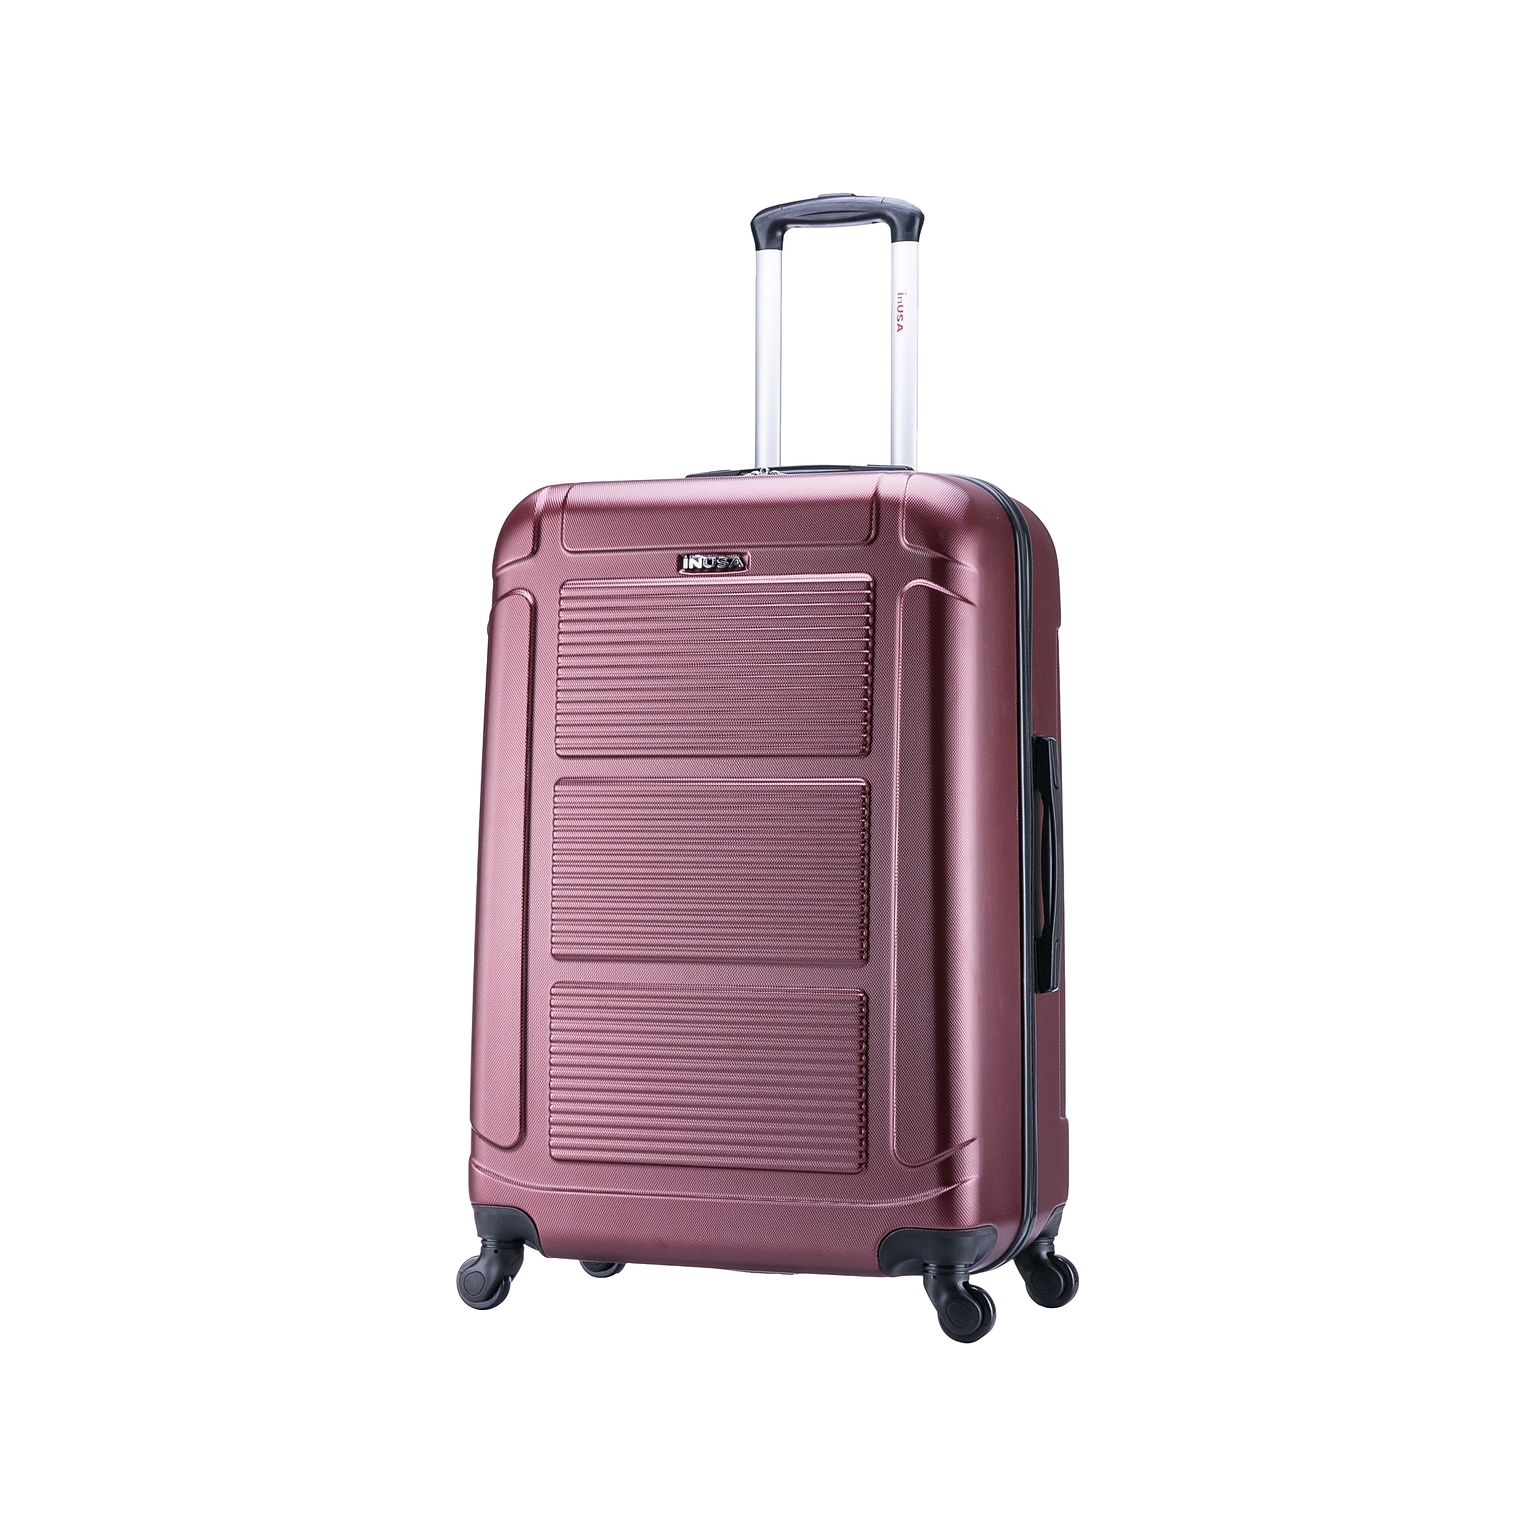 InUSA Pilot 24 Hardside Suitcase, 4-Wheeled Spinner, Wine (IUPIL00M-WIN)